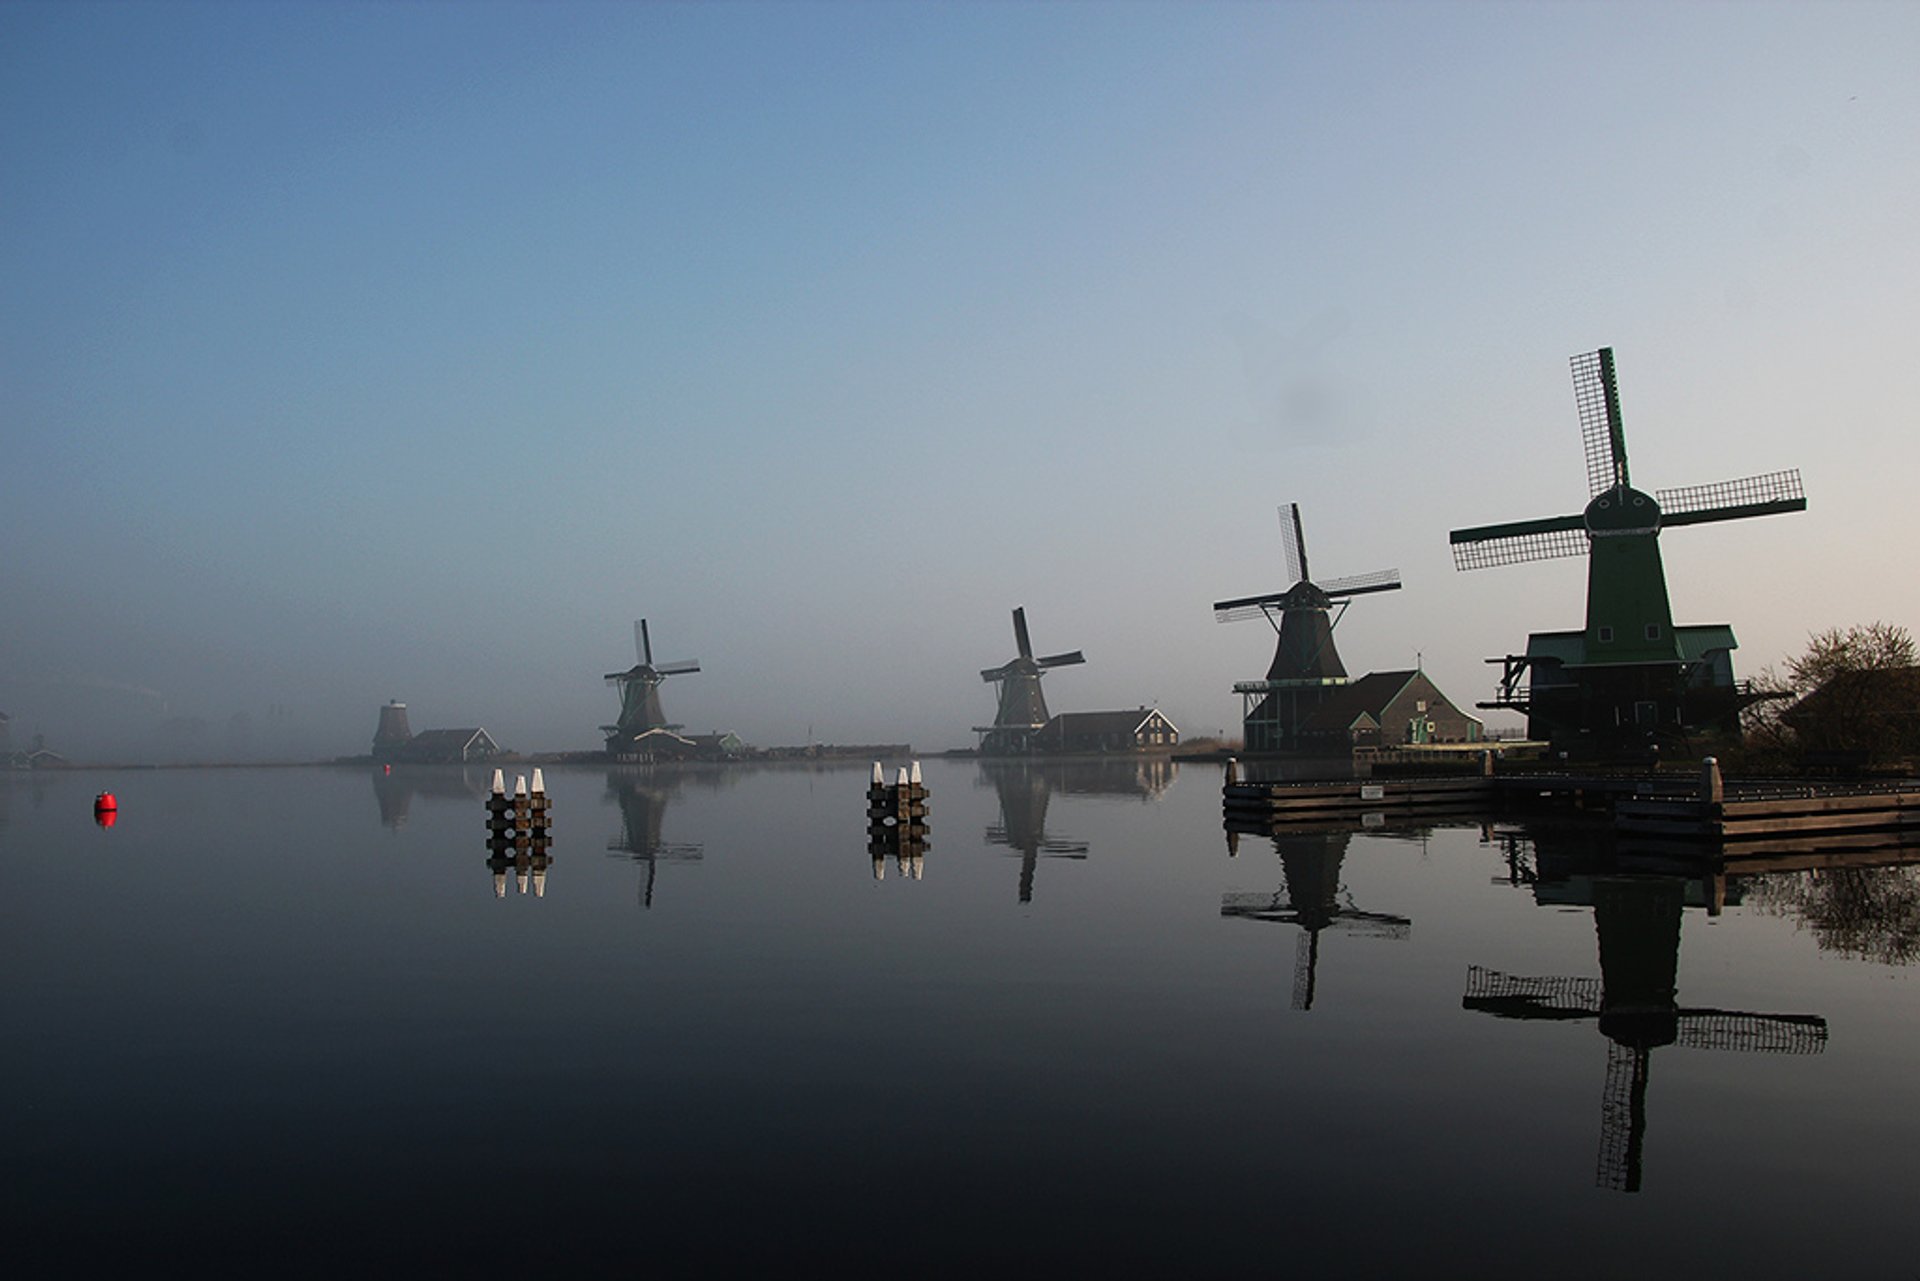 Dutch Countryside & Windmills